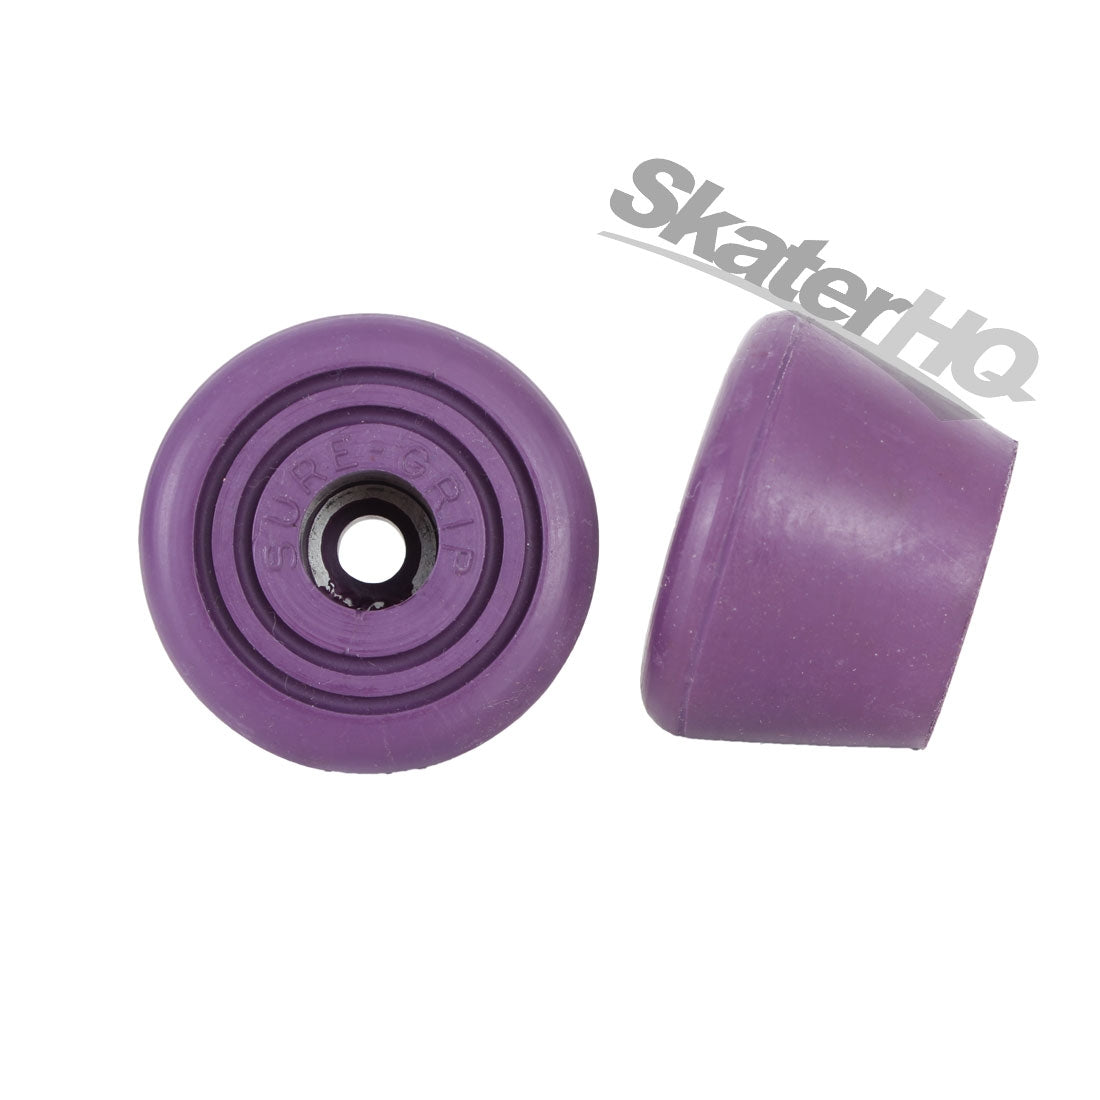 Sure-Grip Bullseye Toe Stop 2pk - Purple Roller Skate Accessories